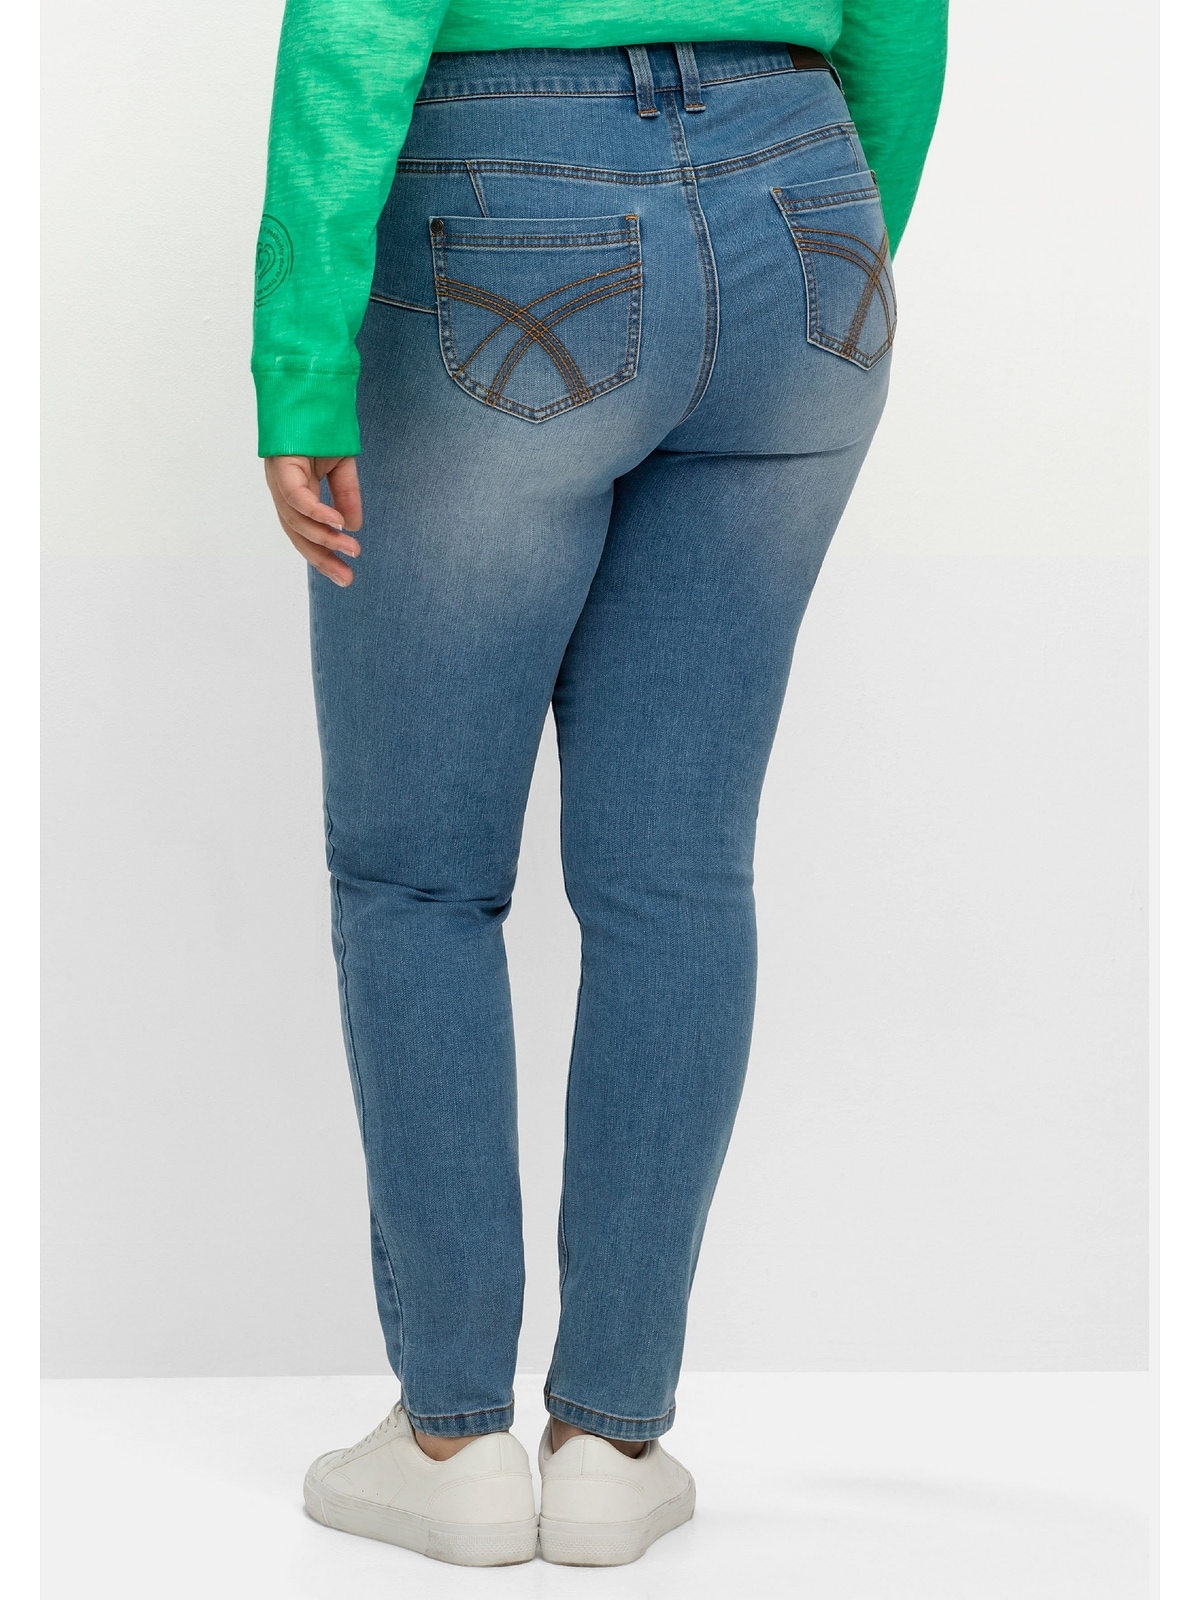 Sheego Stretch-Jeans für mehr sehr Bauch Größen«, shoppen schmale und »Große Beine